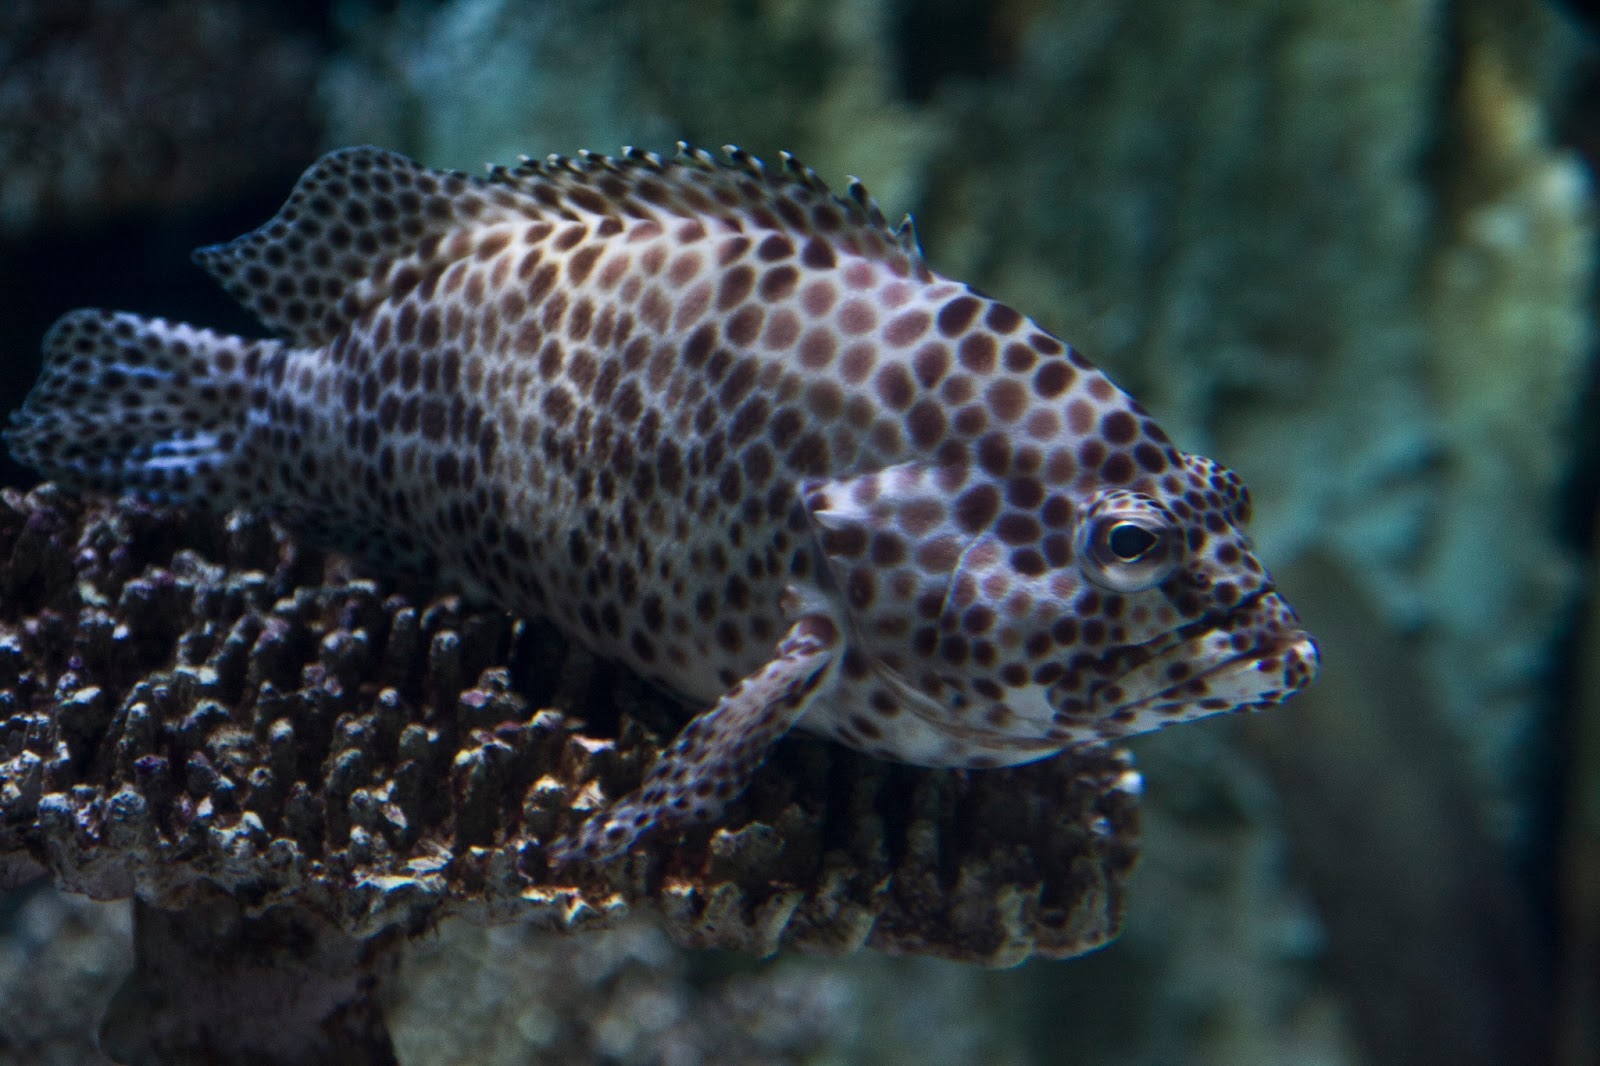 Download this Long Beach Aquarium picture